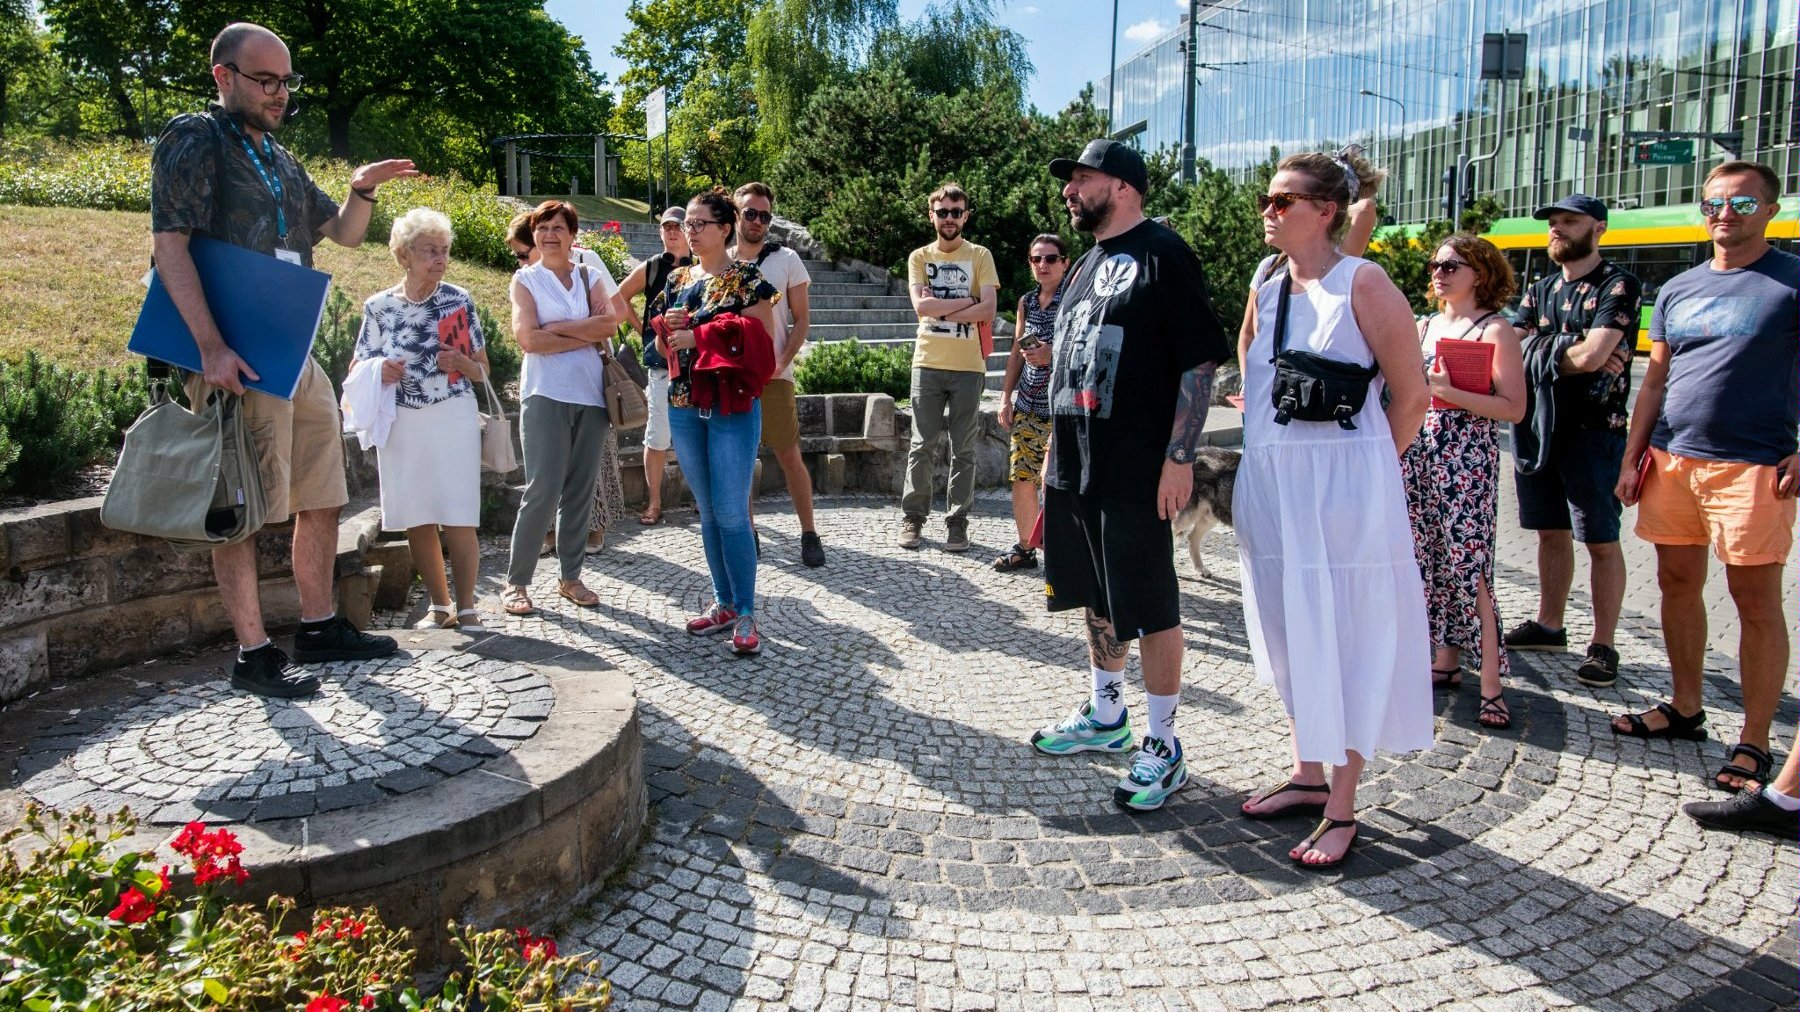 Ludzie stojący na placyku przy parku Dąbrowskiego przy Górnej Wildzie słuchający przewodnika w słoneczny dzień. Za nimi tramwaj i nowoczense budownictwo.